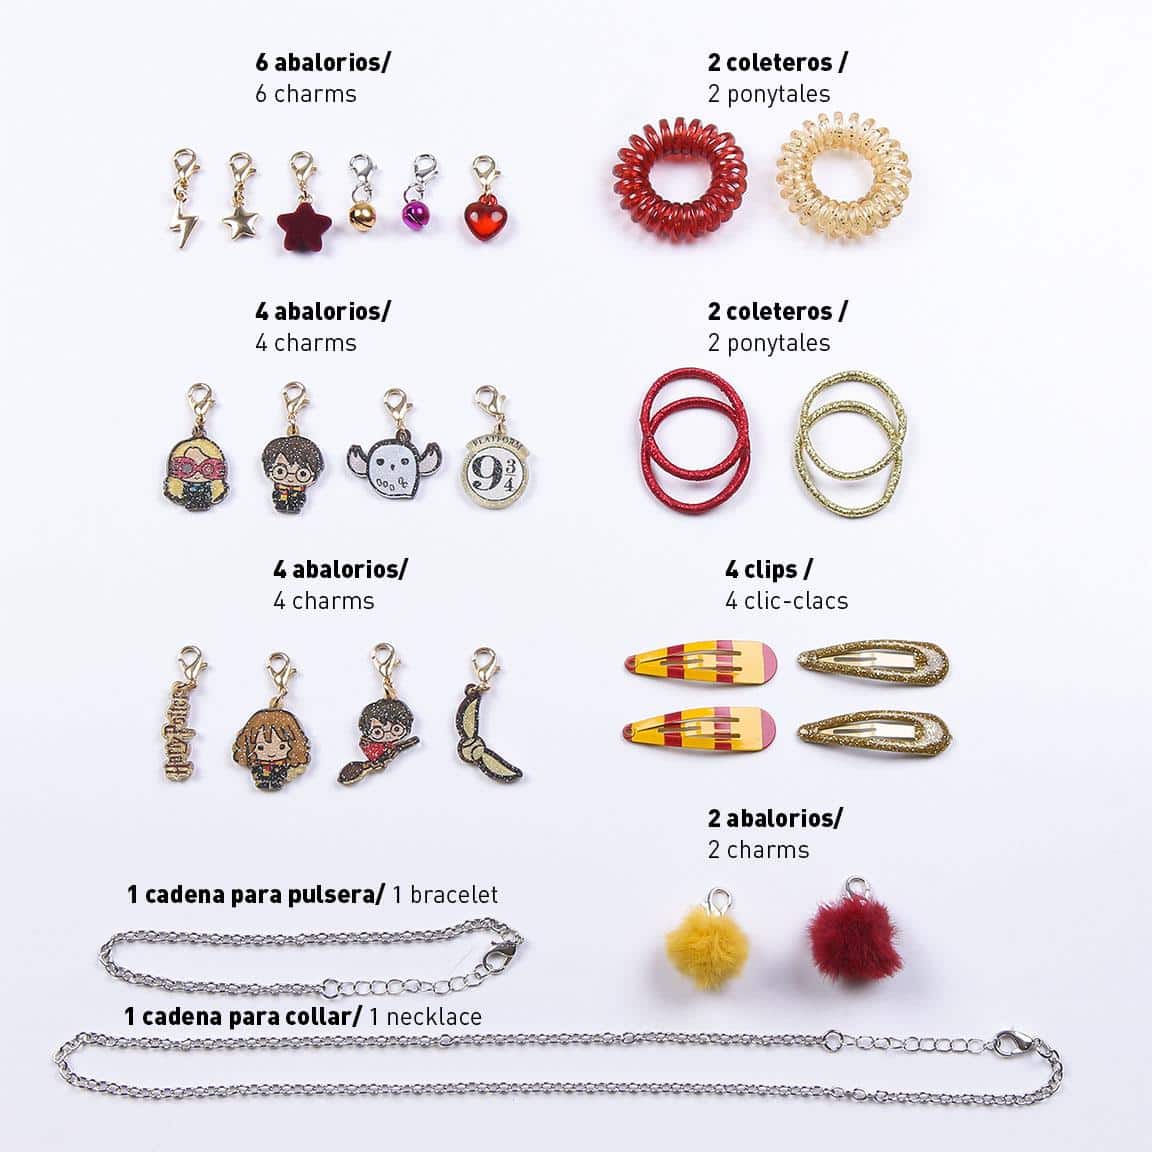 Calendrier de l'Avent avec bijoux - Calendrier de Noël - Collier, bracelet  et